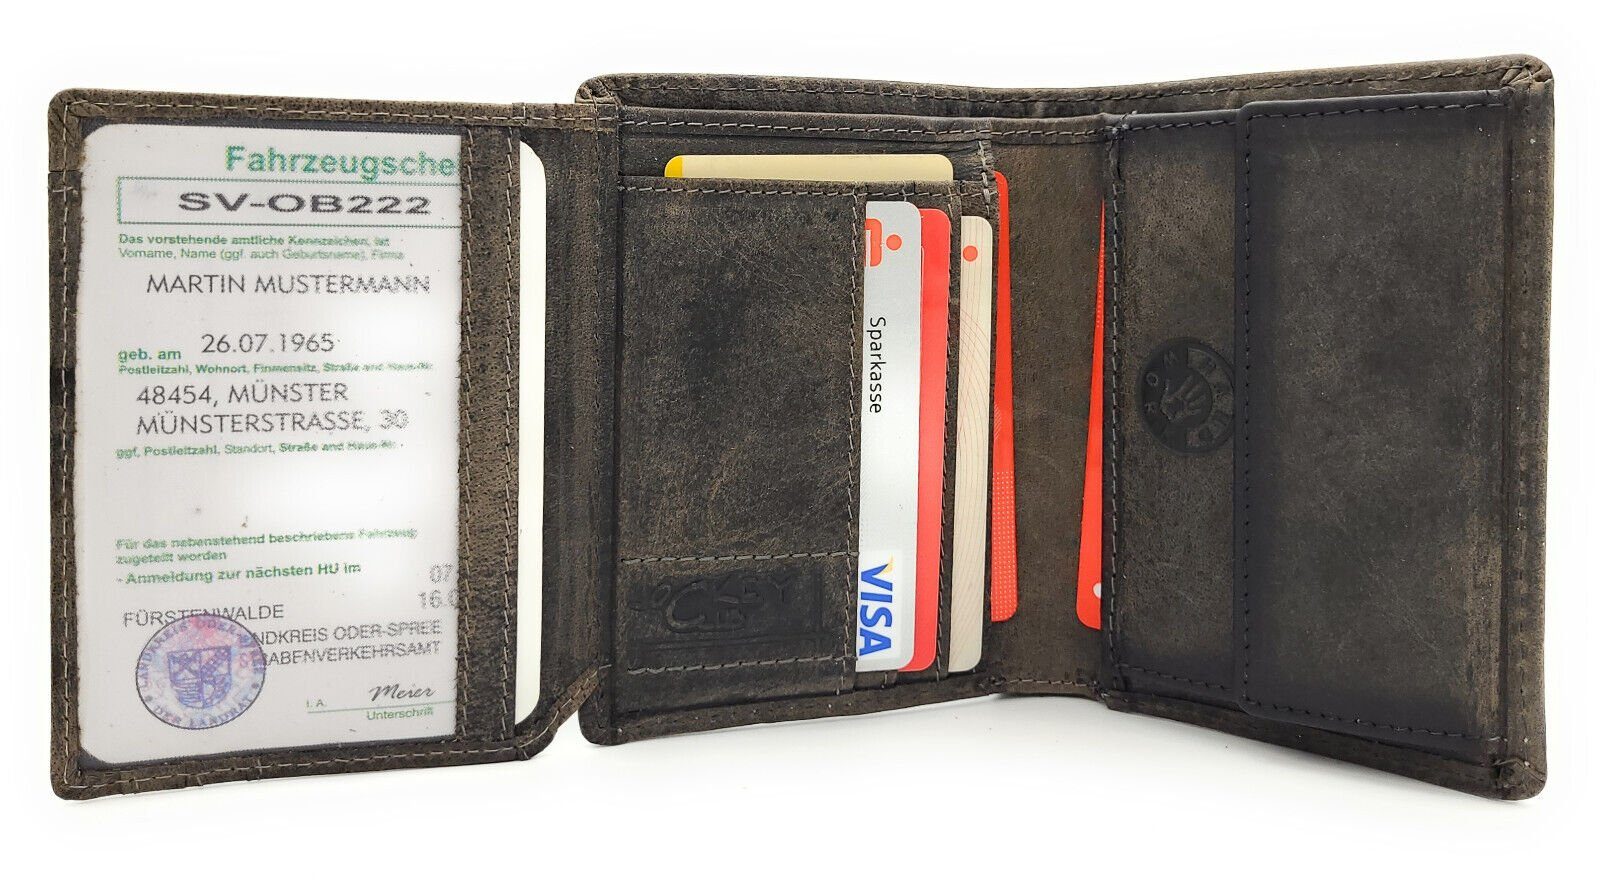 JOCKEY CLUB Geldbörse echt Leder Portemonnaie mit RFID Schutz vintage grau, Fach für KFZ Papiere